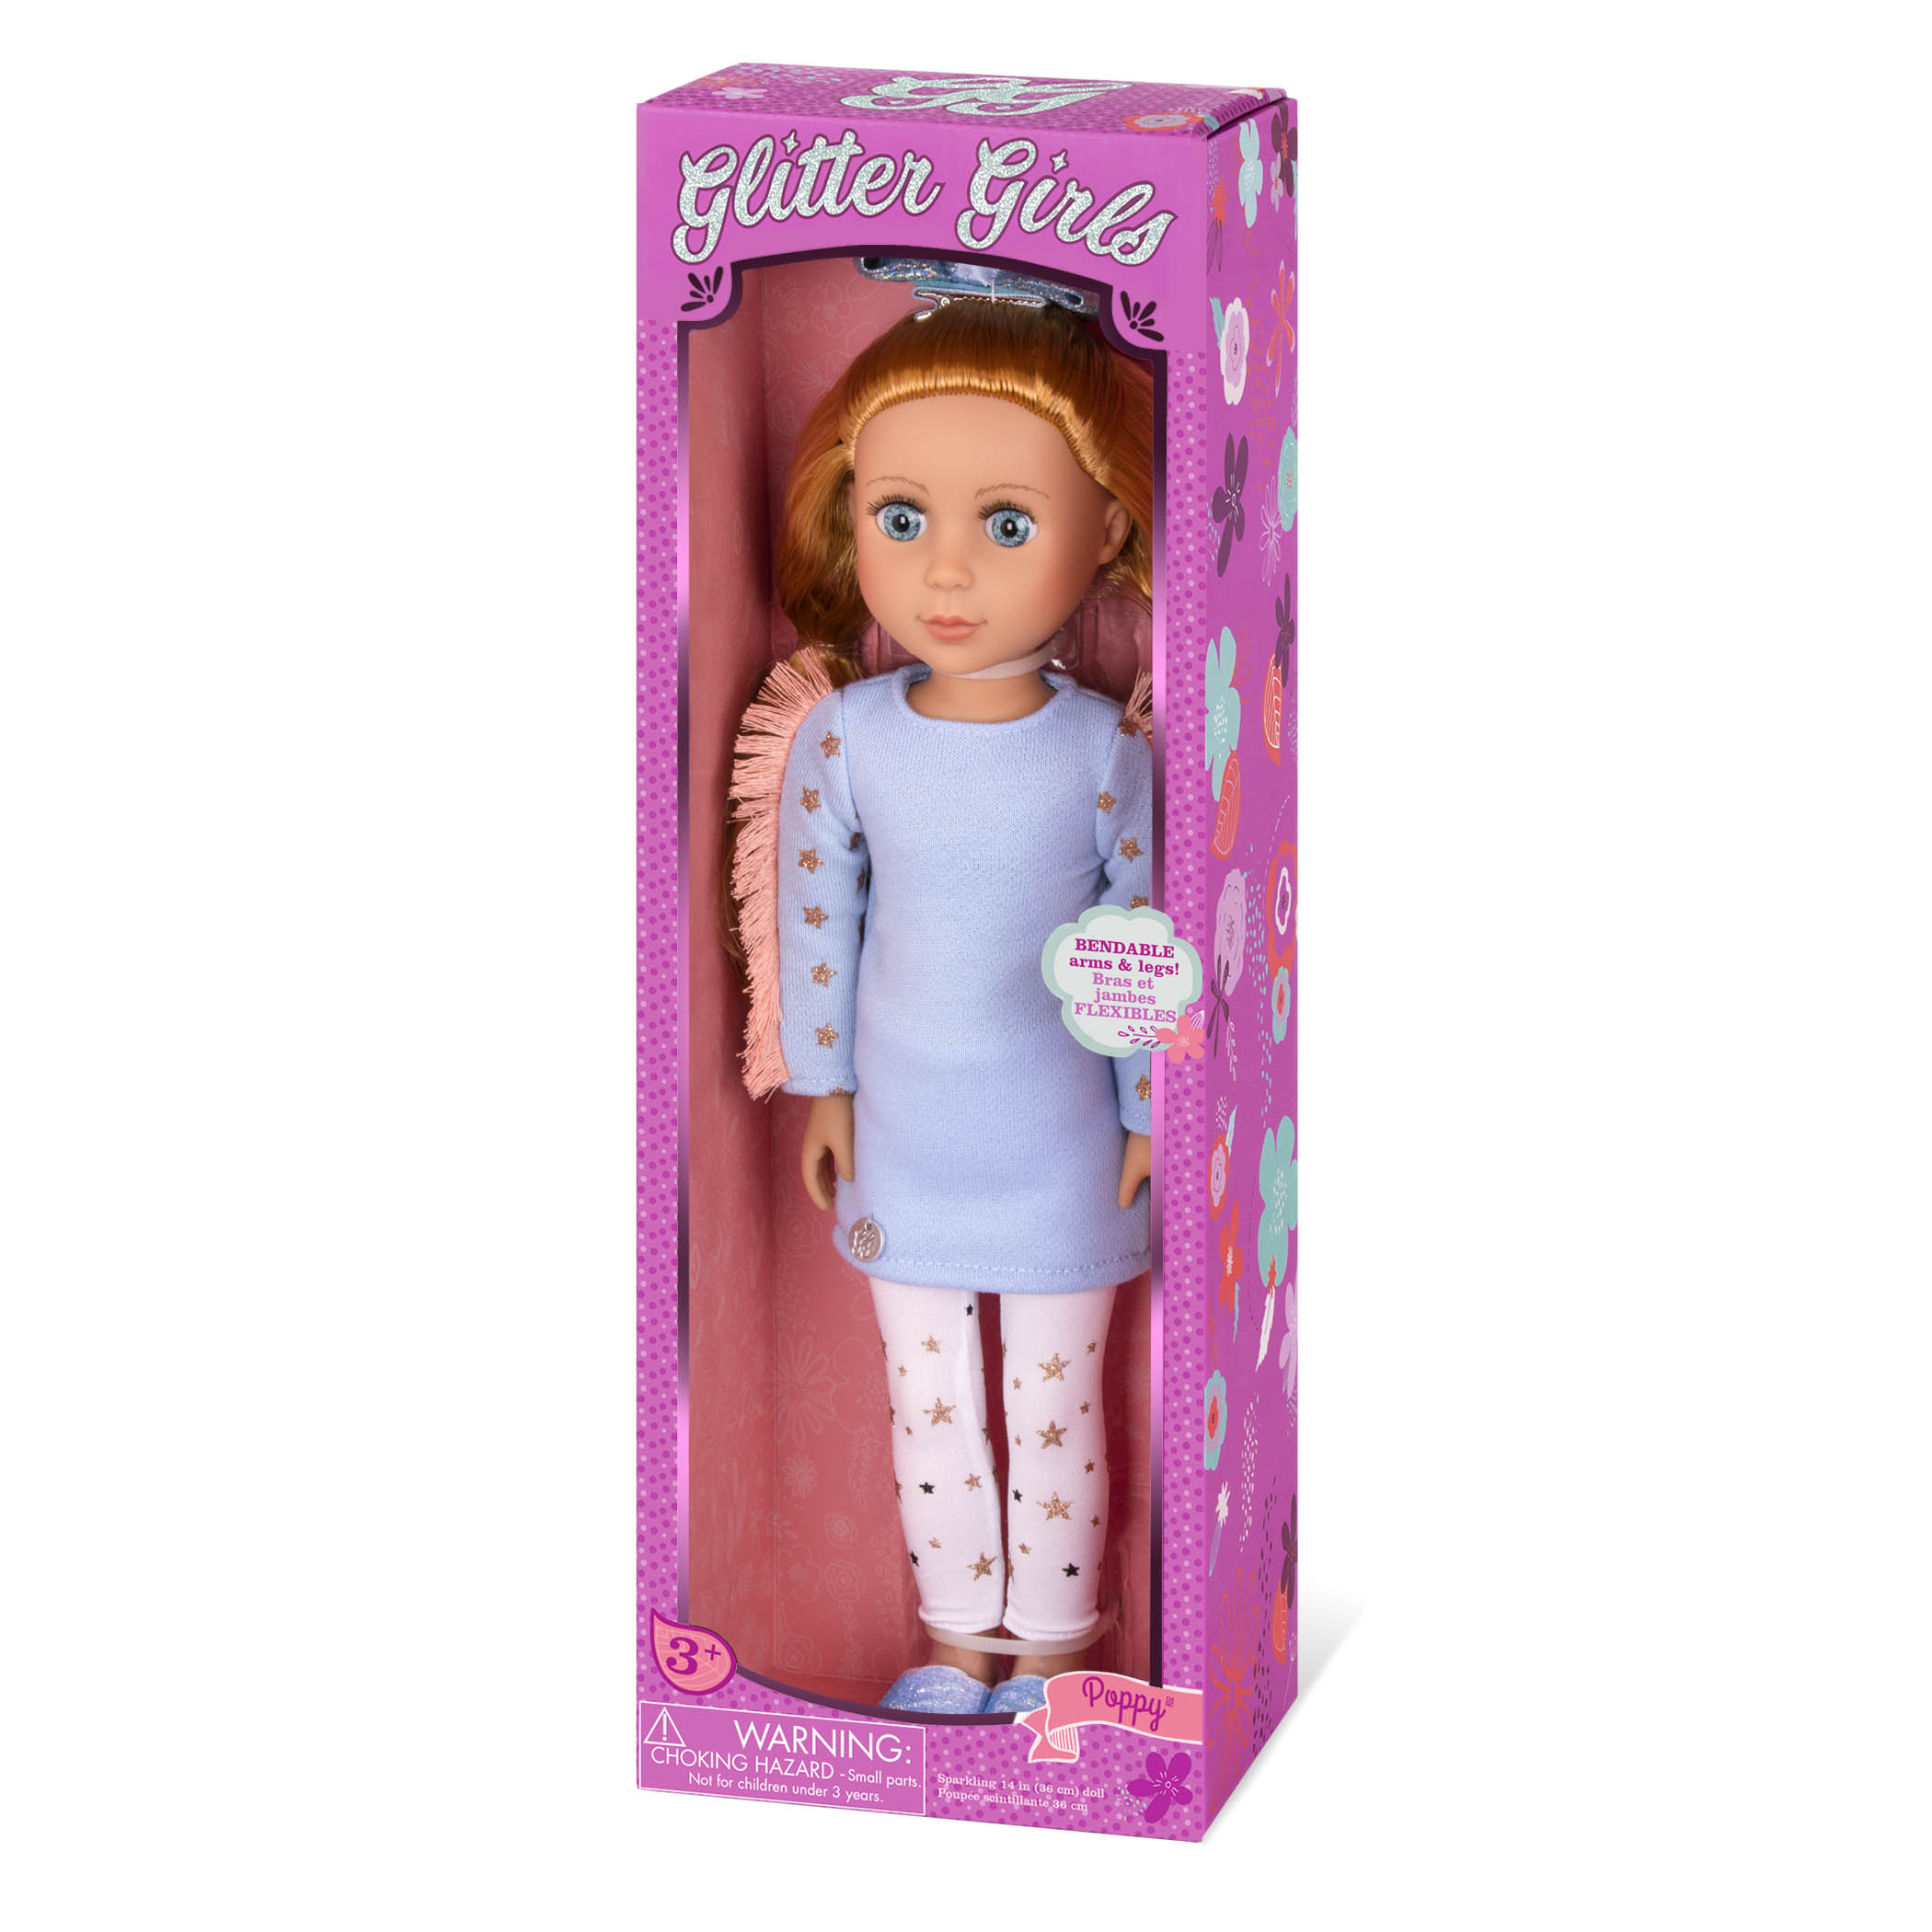 Glitter Girls Dolls by Battat - Sarinia 14 Posable Fashion Doll - Dolls  For Gir